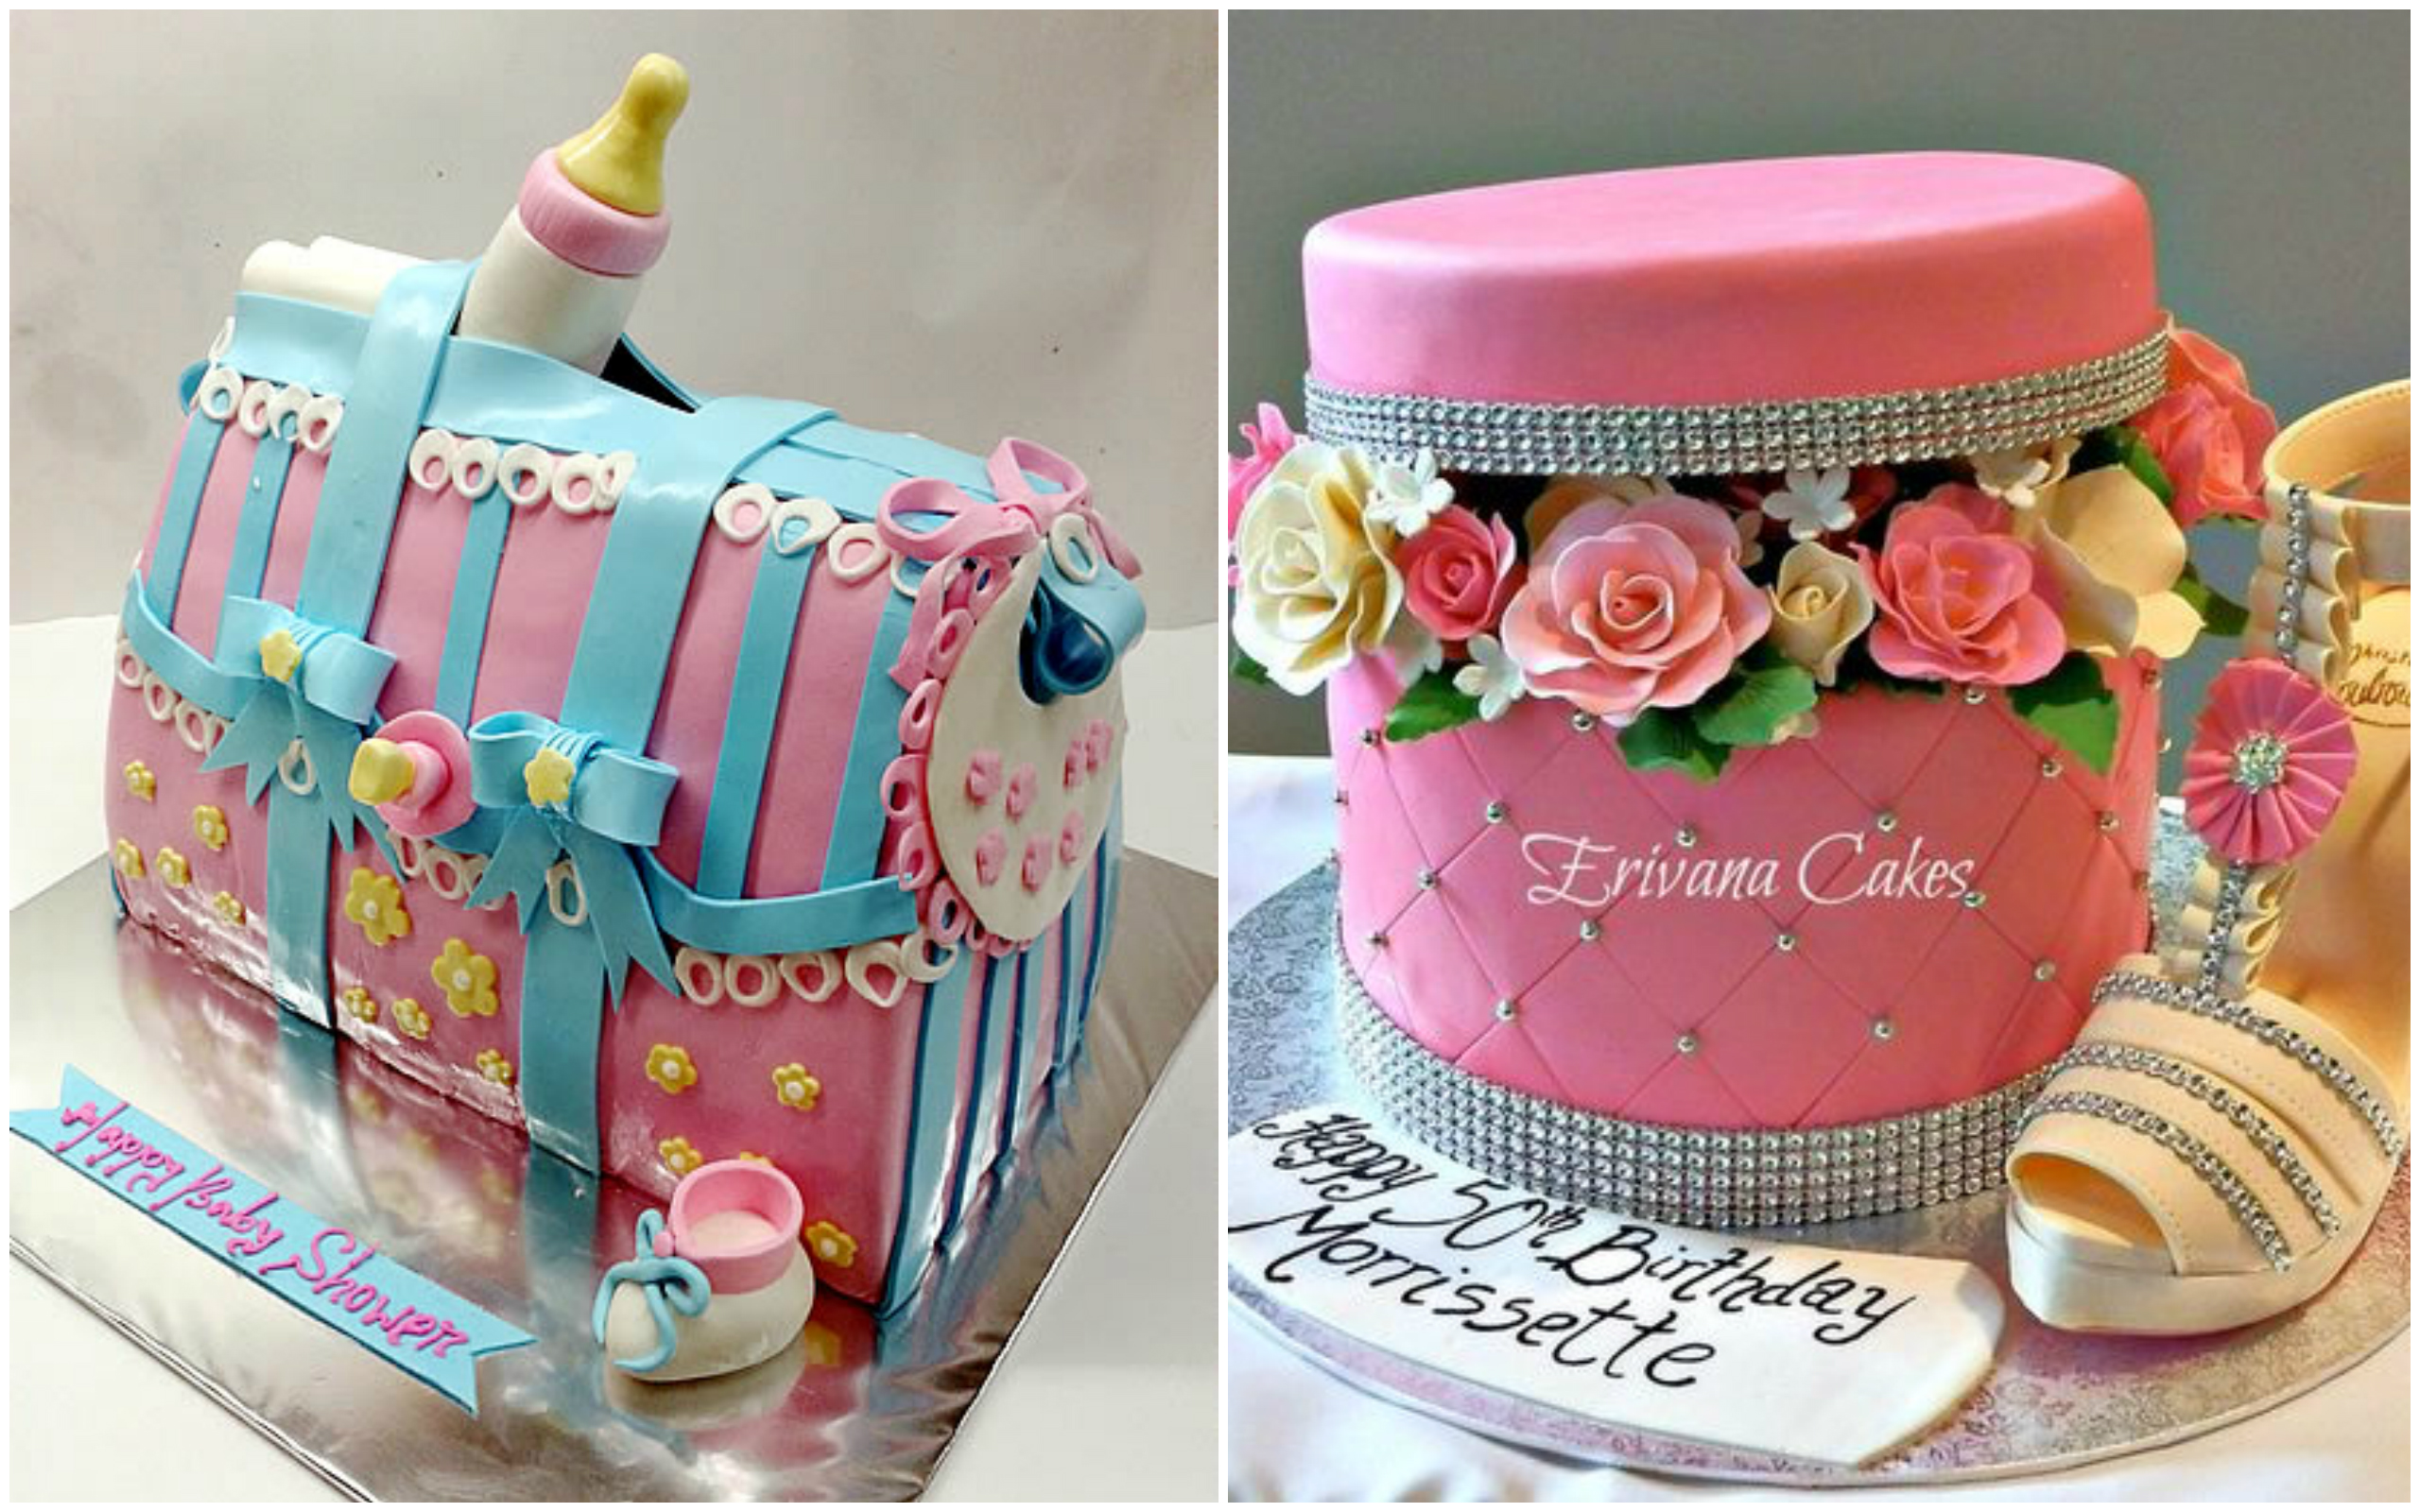 Kalia 3D cakes - Princess Sofia! 👑 | Facebook